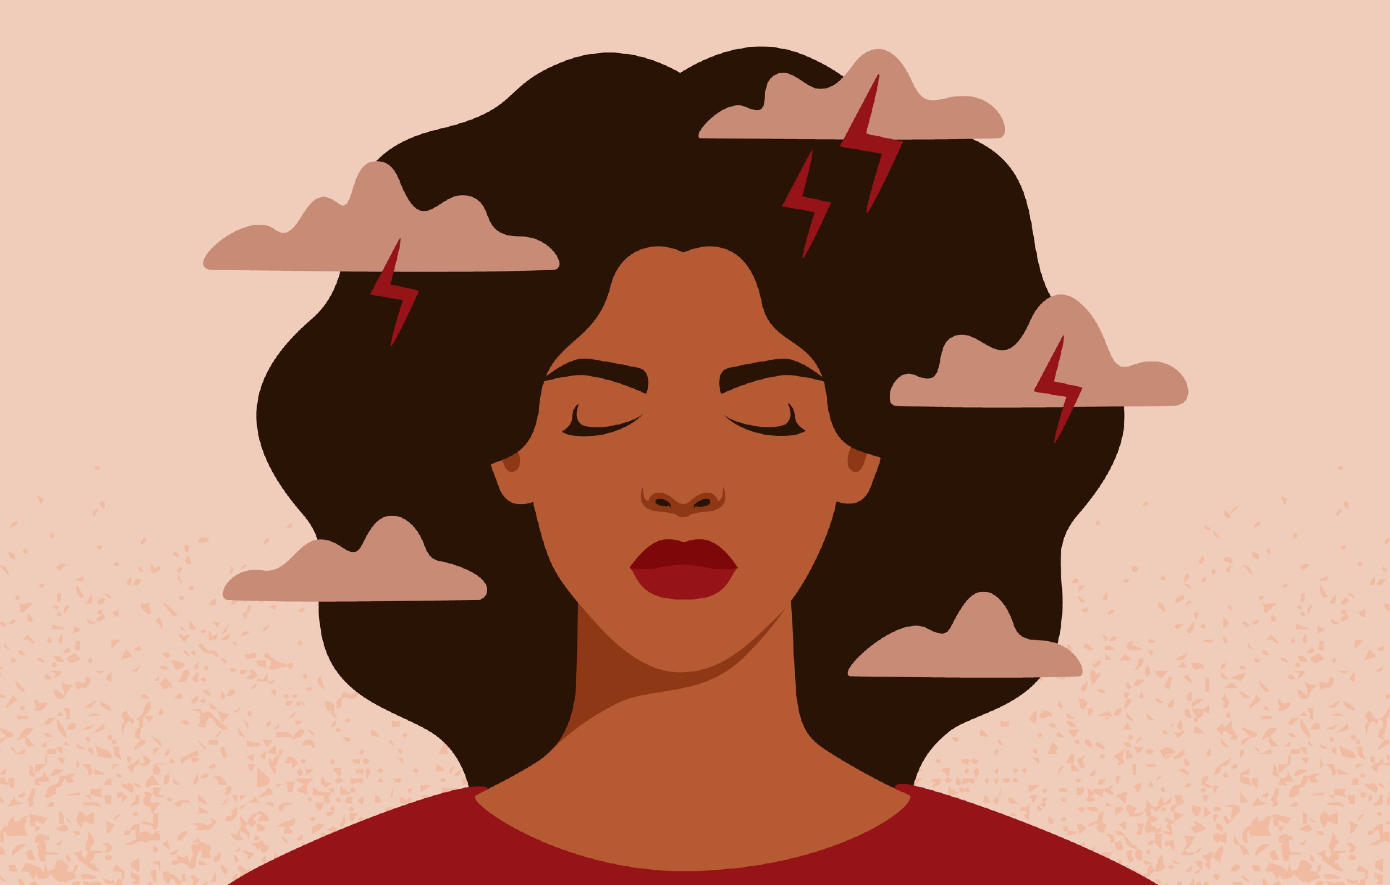 Πώς ο κανόνας 3-3-3 για το άγχος μπορεί να ηρεμήσει το μυαλό σας